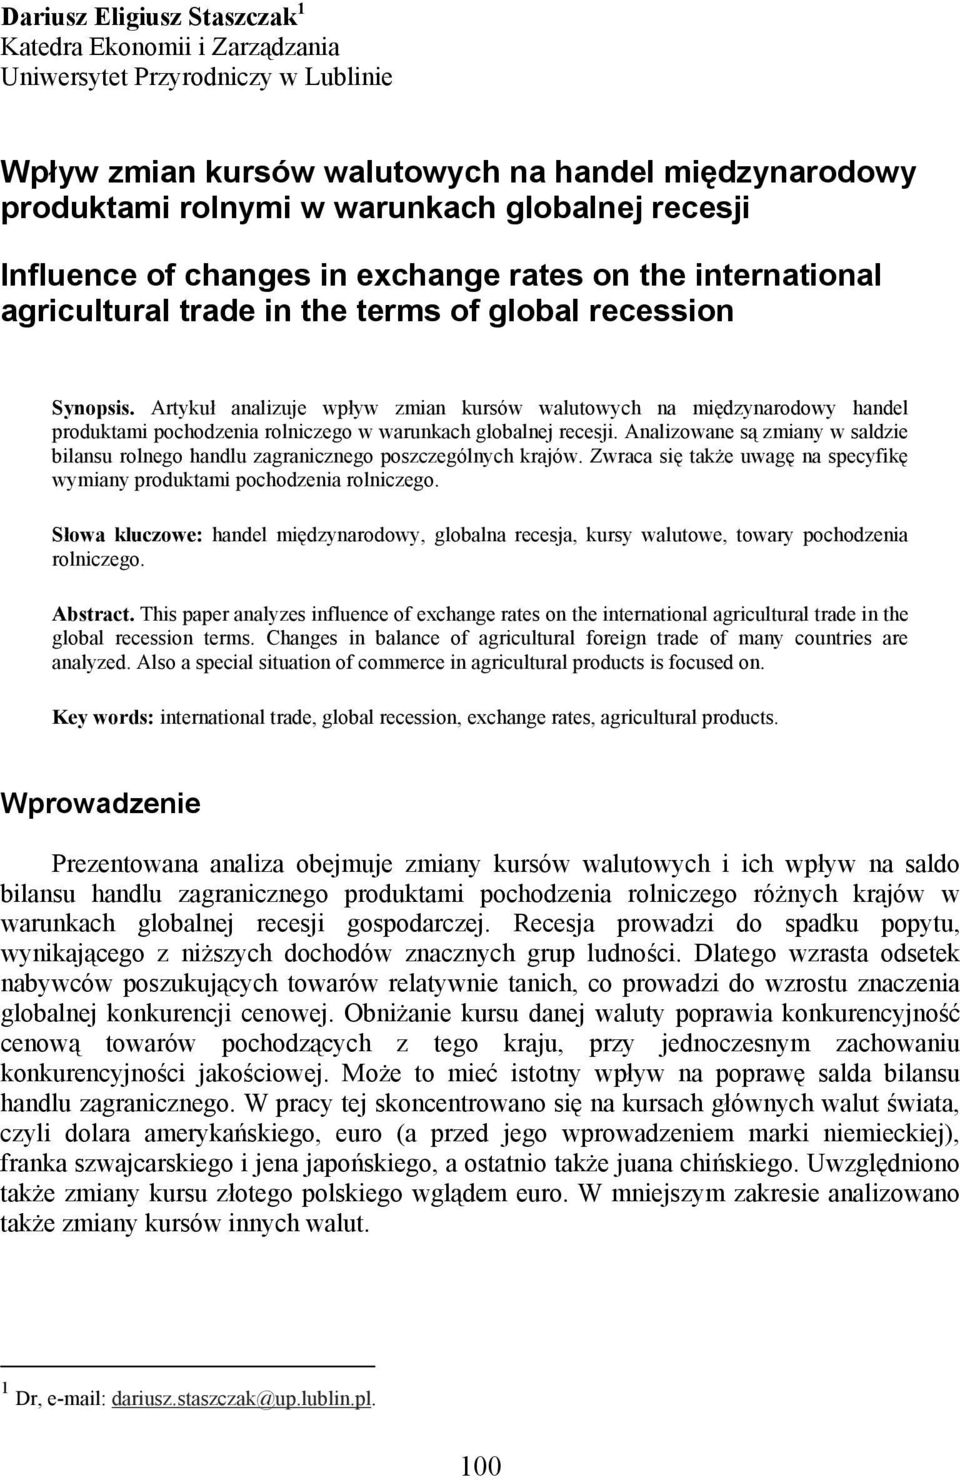 Artykuł analizuje wpływ zmian kursów walutowych na międzynarodowy handel produktami pochodzenia rolniczego w warunkach globalnej recesji.